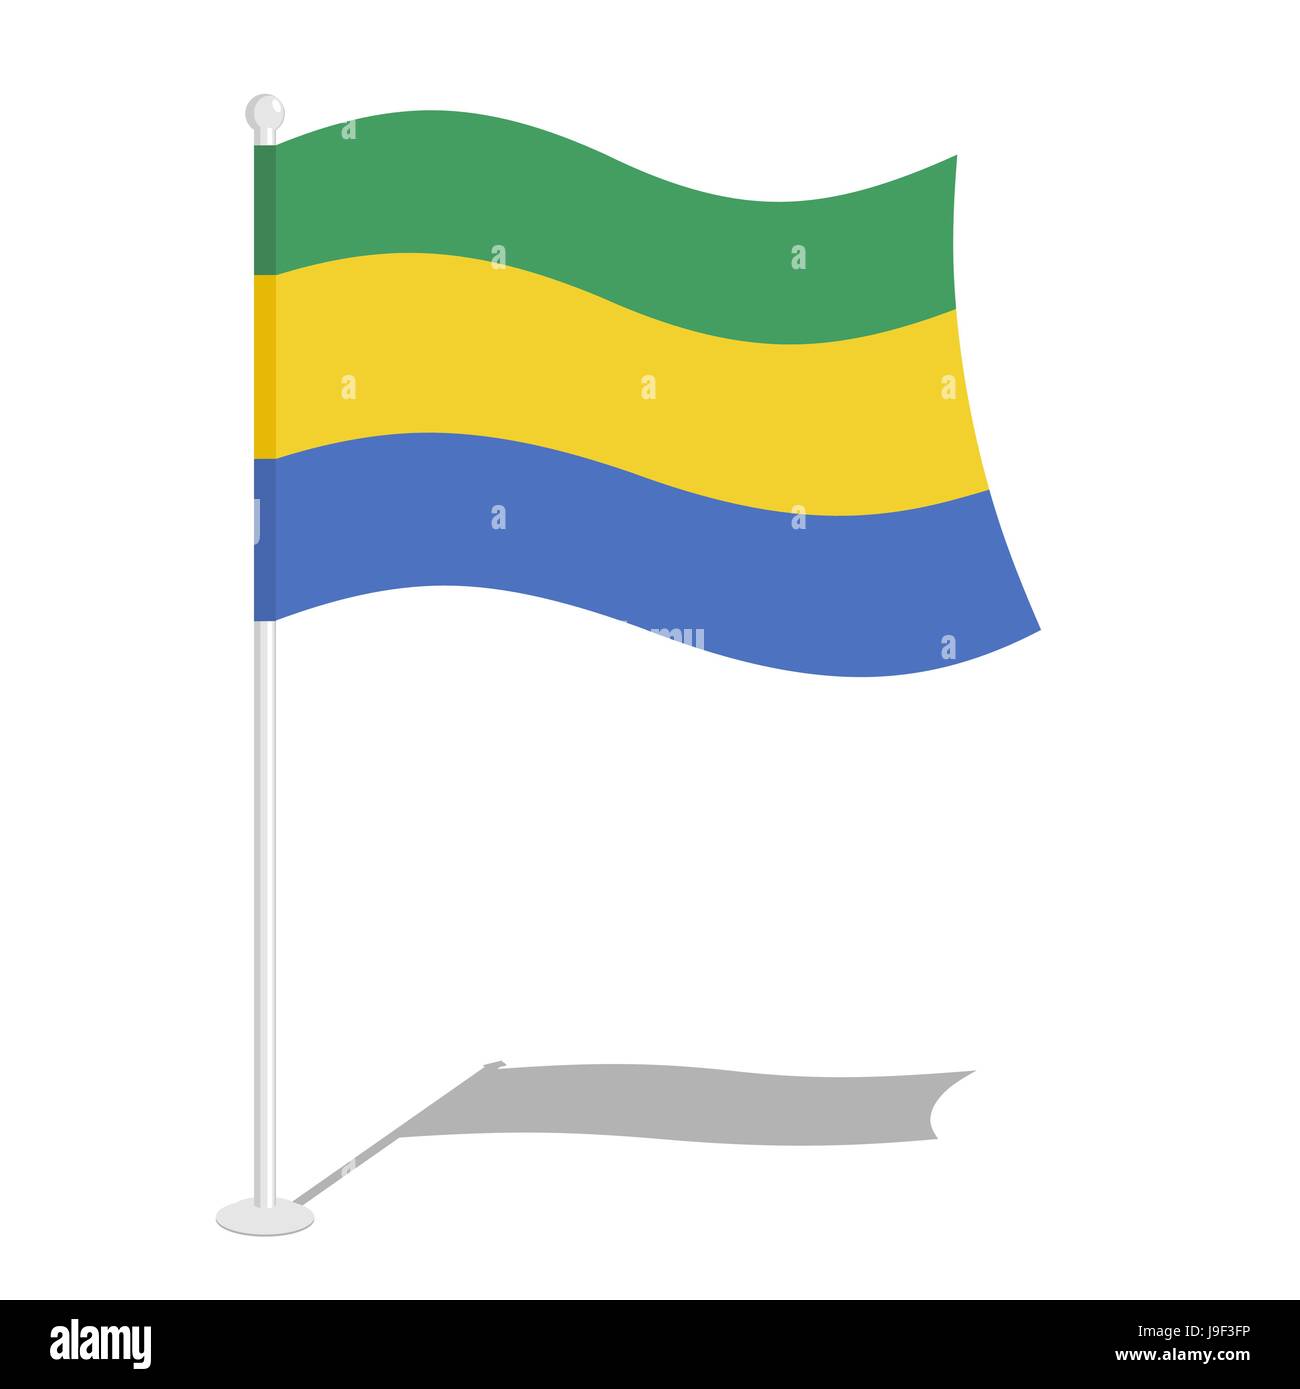 Le Gabon Drapeau. Symbole national officiel de la République gabonaise. Drapeau gabonais traditionnels en développement en Afrique Centrale Illustration de Vecteur